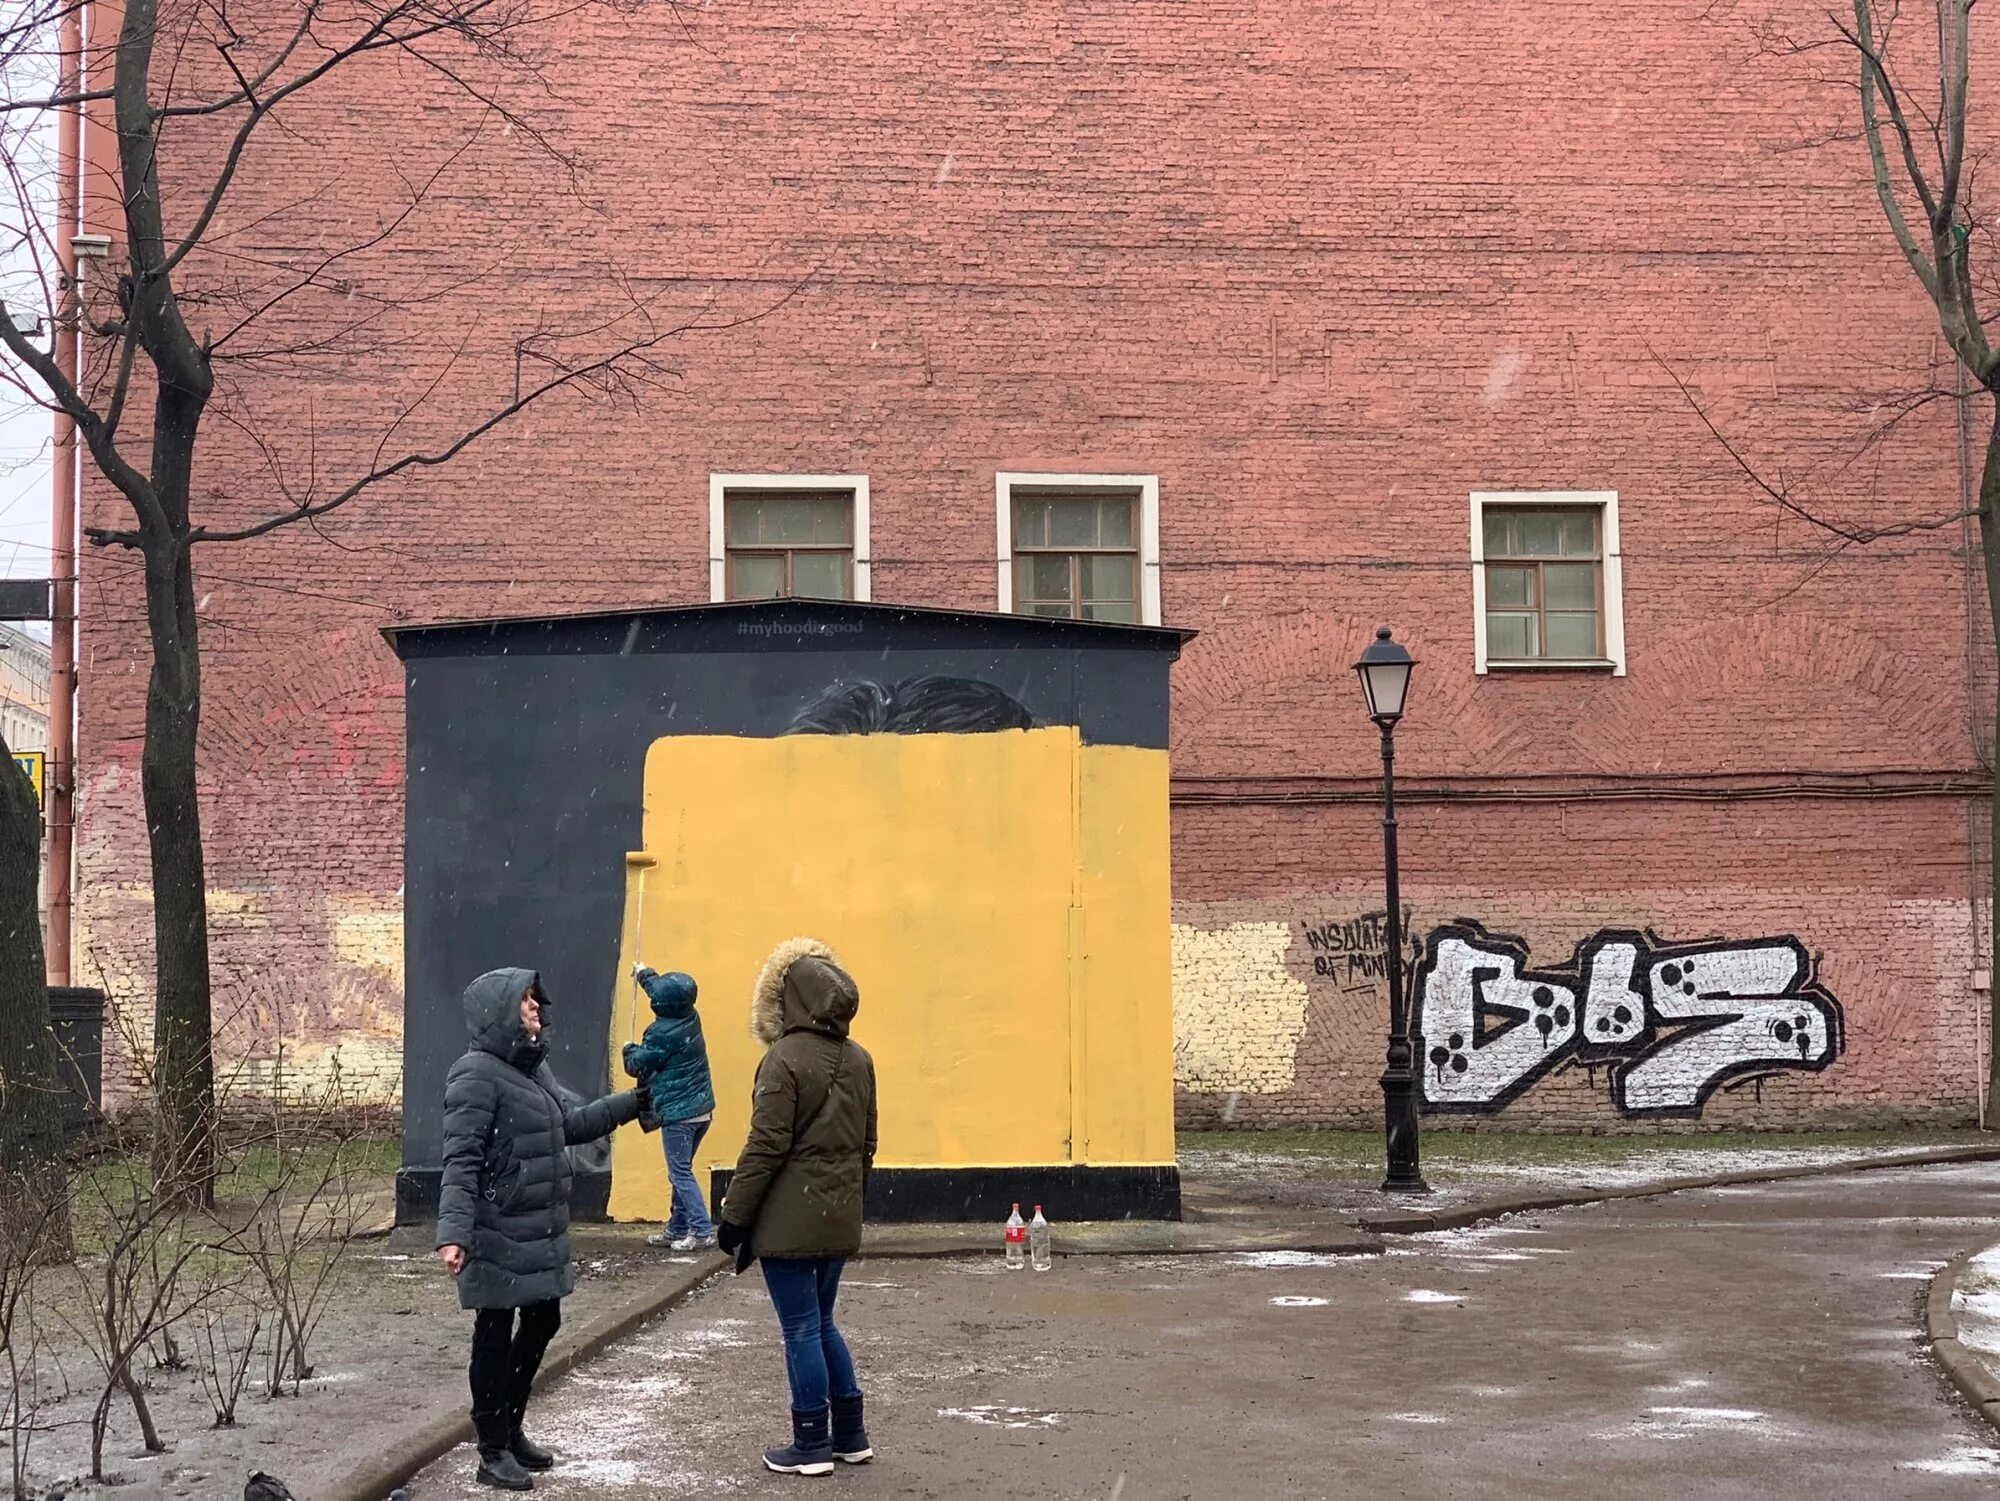 Painted over. Граффити в Питере закрасили коммунальщики. Закрасили граффити крутое пике. Граффити HOODGRAFF В Санкт-Петербурге закрасили. Граффити Бодрова в Питере закрасили.